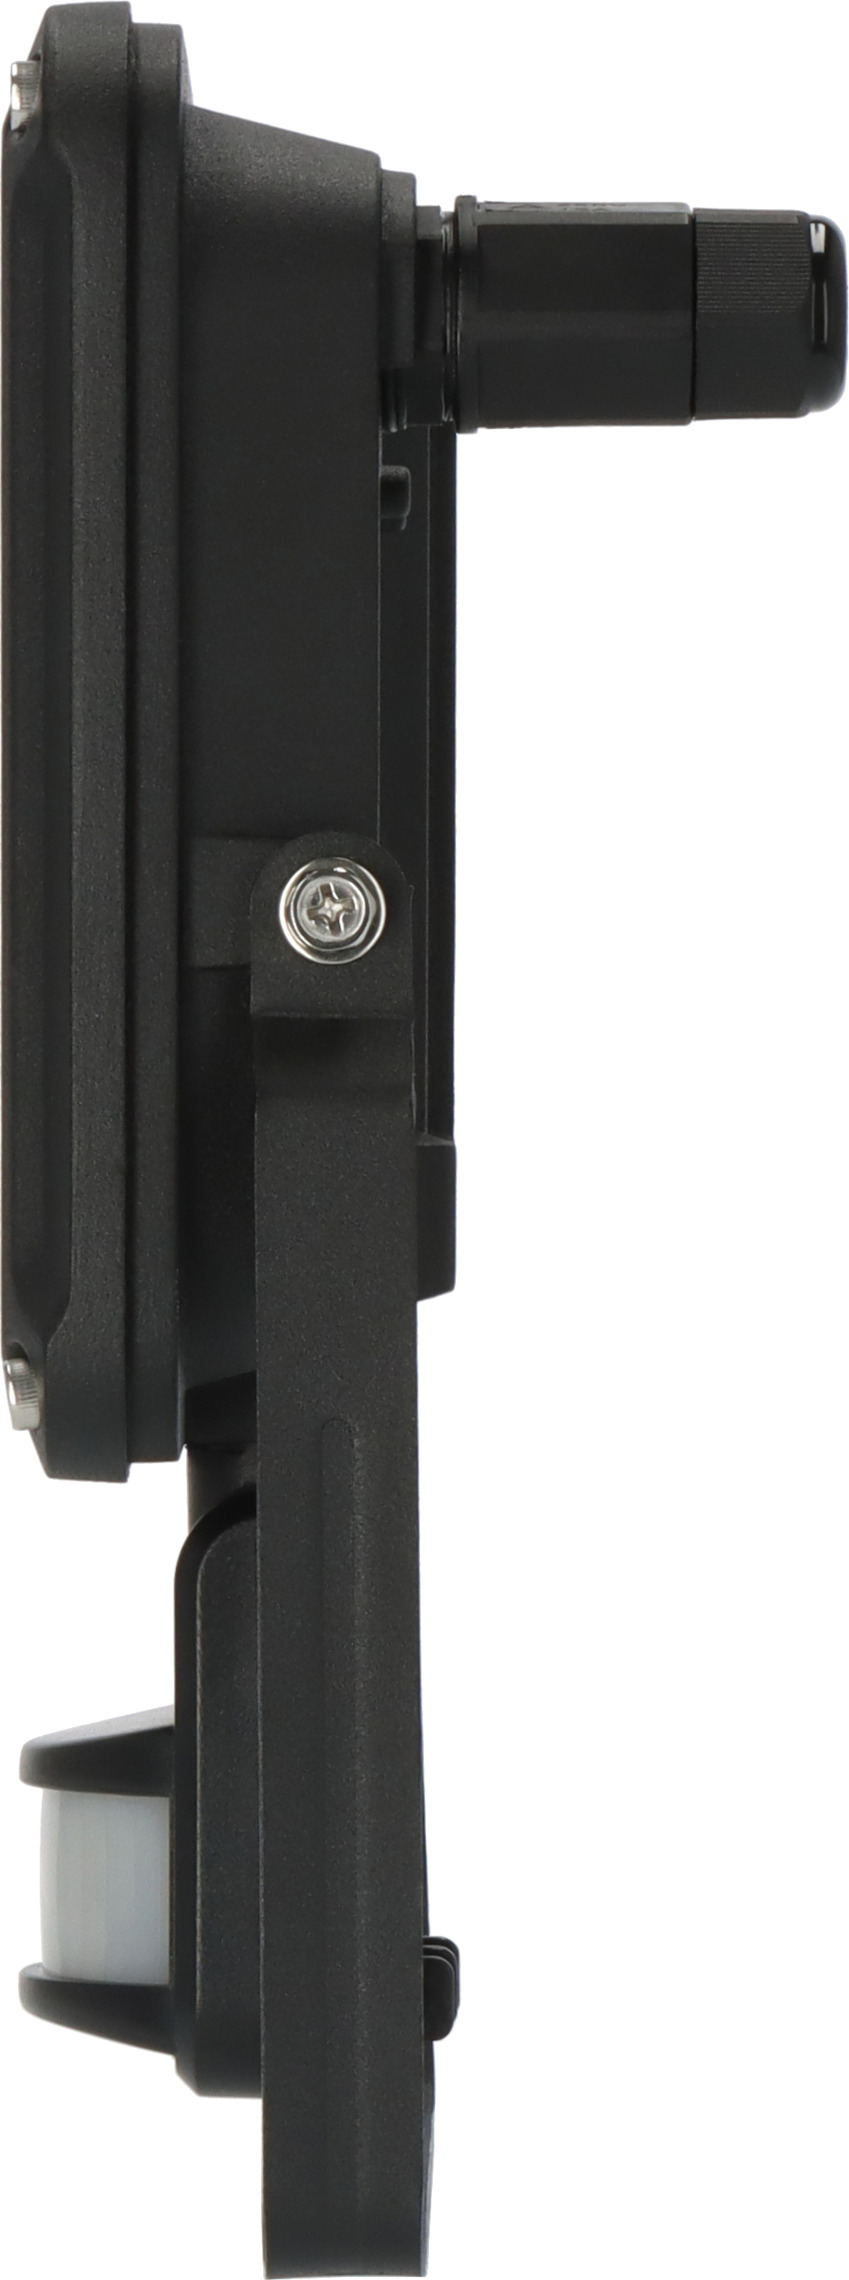 LED Strahler JARO 4060 P mit Infrarot-Bewegungsmelder 3450lm, 30W, IP65 |  brennenstuhl®